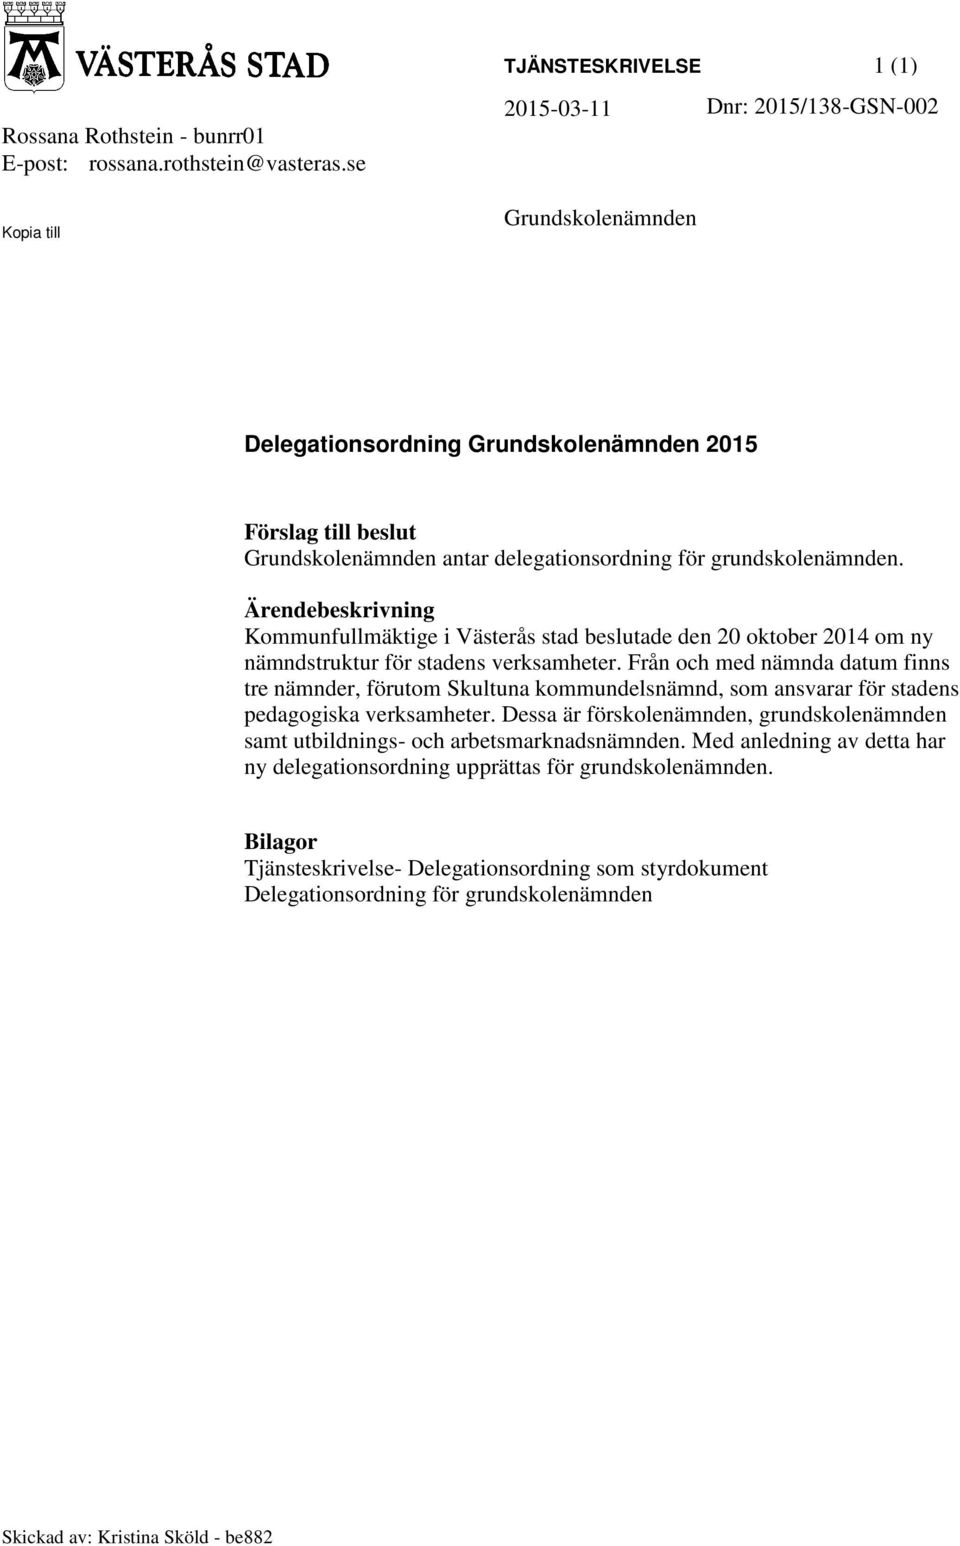 grundskolenämnden. Ärendebeskrivning Kommunfullmäktige i Västerås stad beslutade den 20 oktober 2014 om ny nämndstruktur för stadens verksamheter.